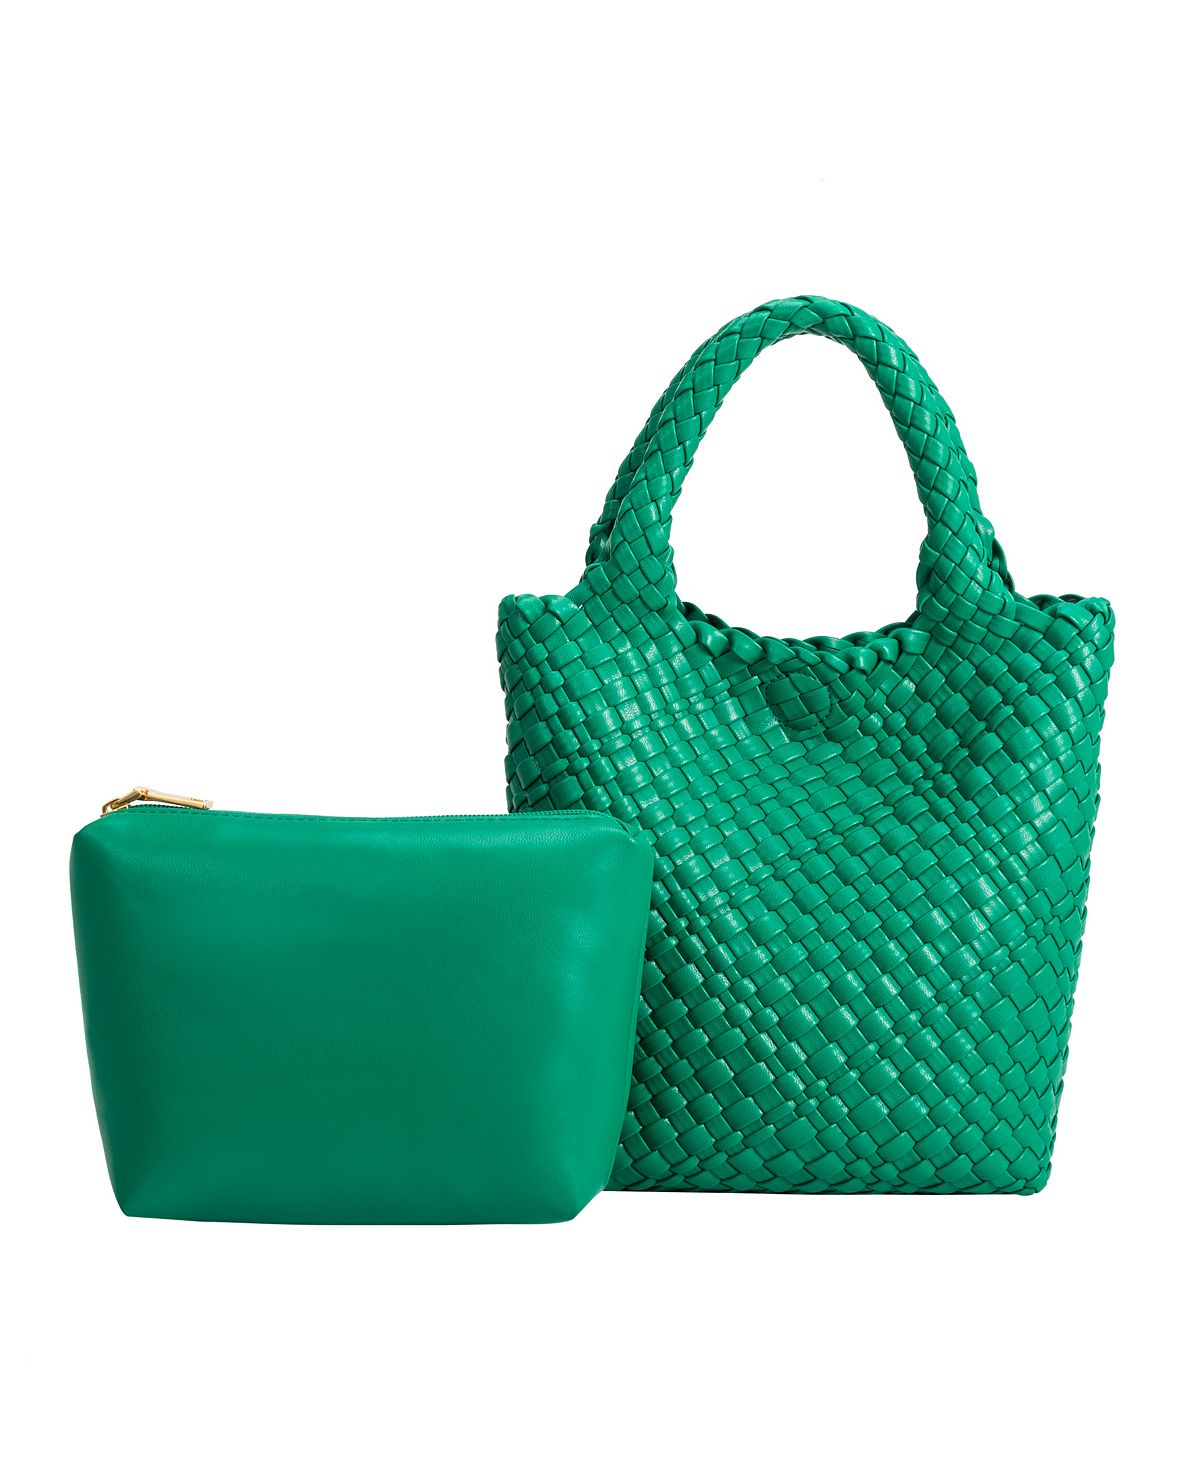 Женская большая сумка Eloise Melie Bianco, зеленый женская большая сумка sylvie melie bianco черный